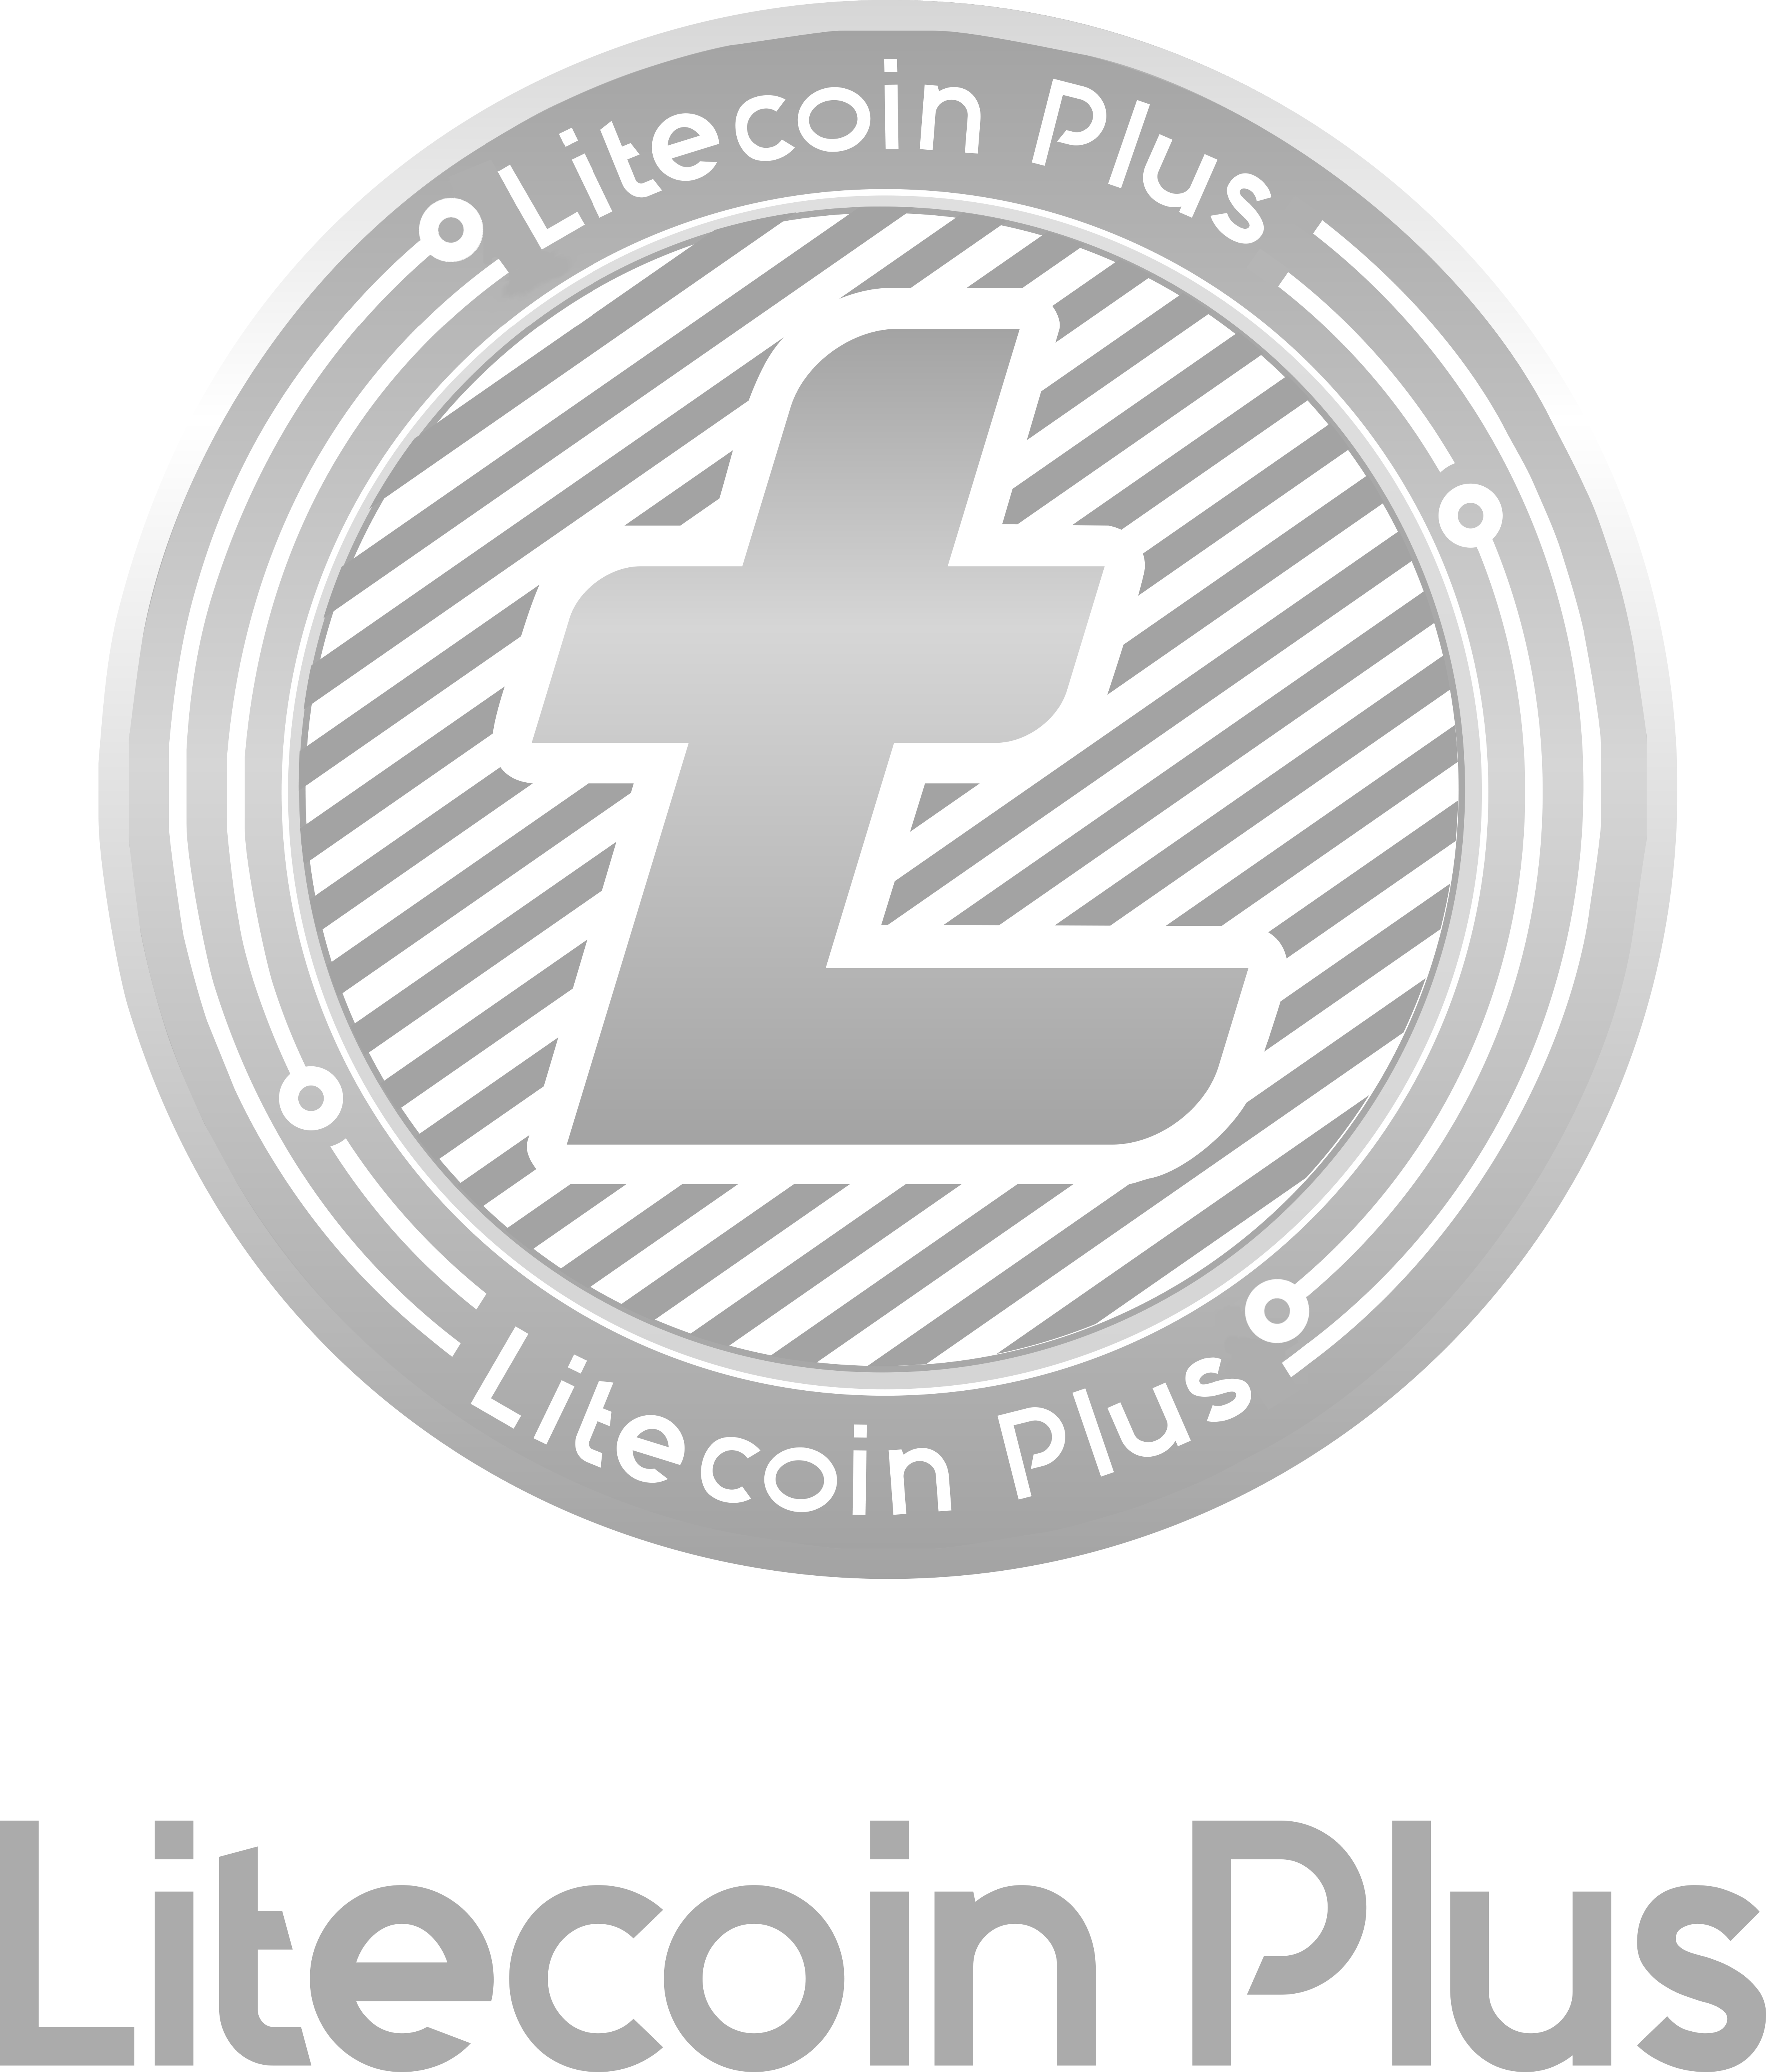 Litecoin Plus logo